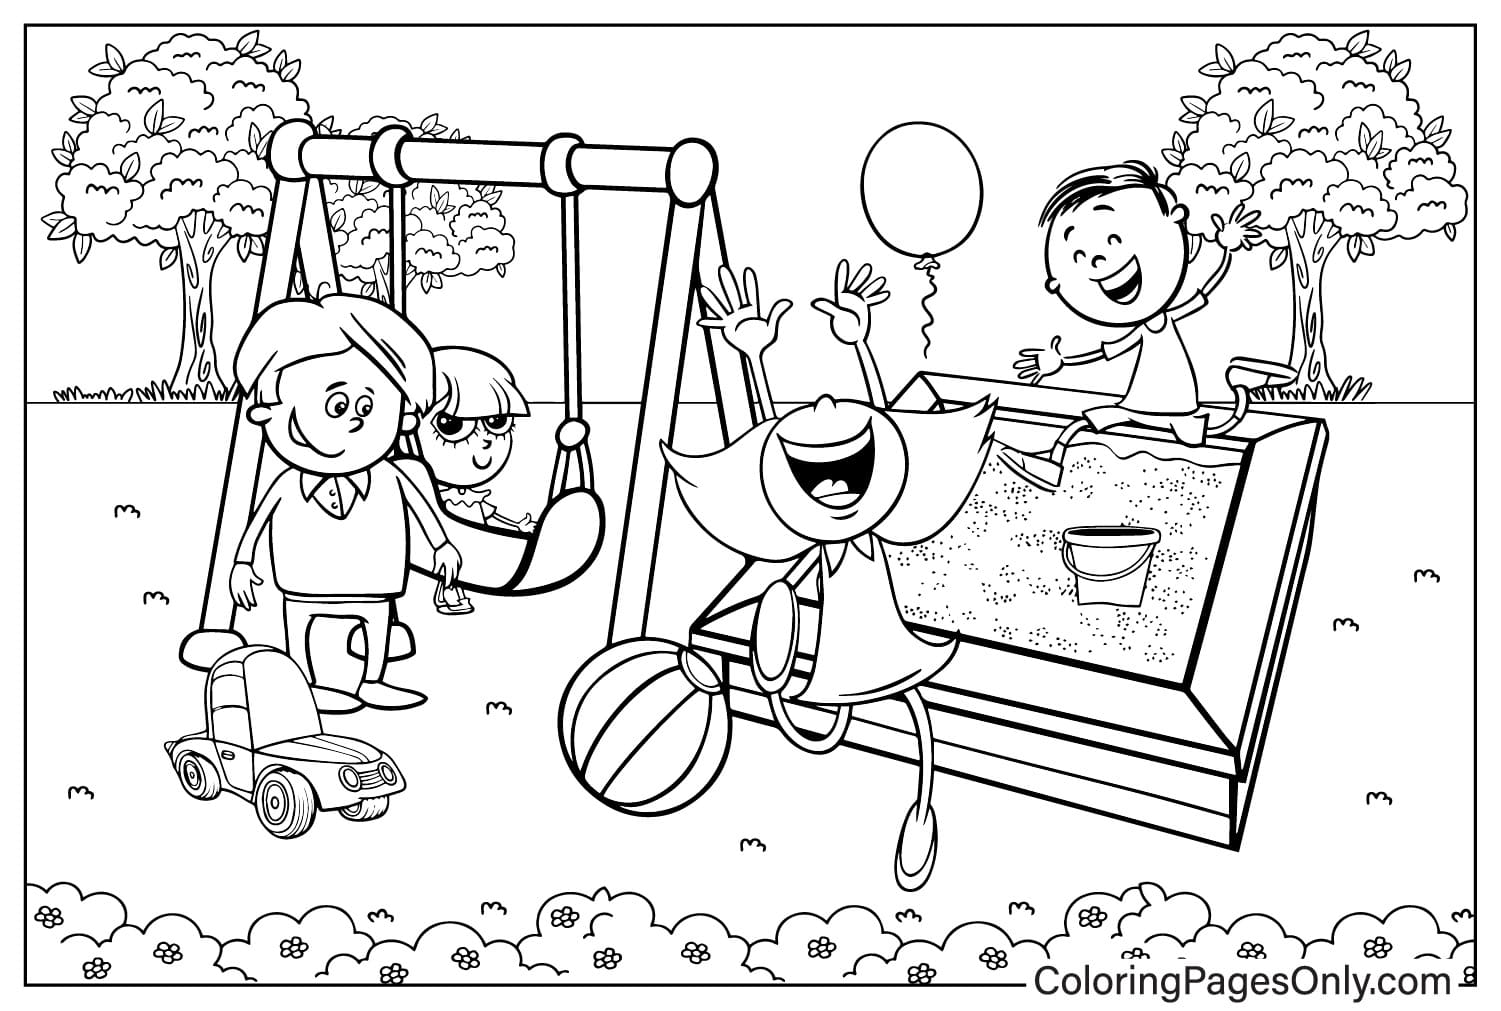 Página para colorir para impressão do Playground no Playground